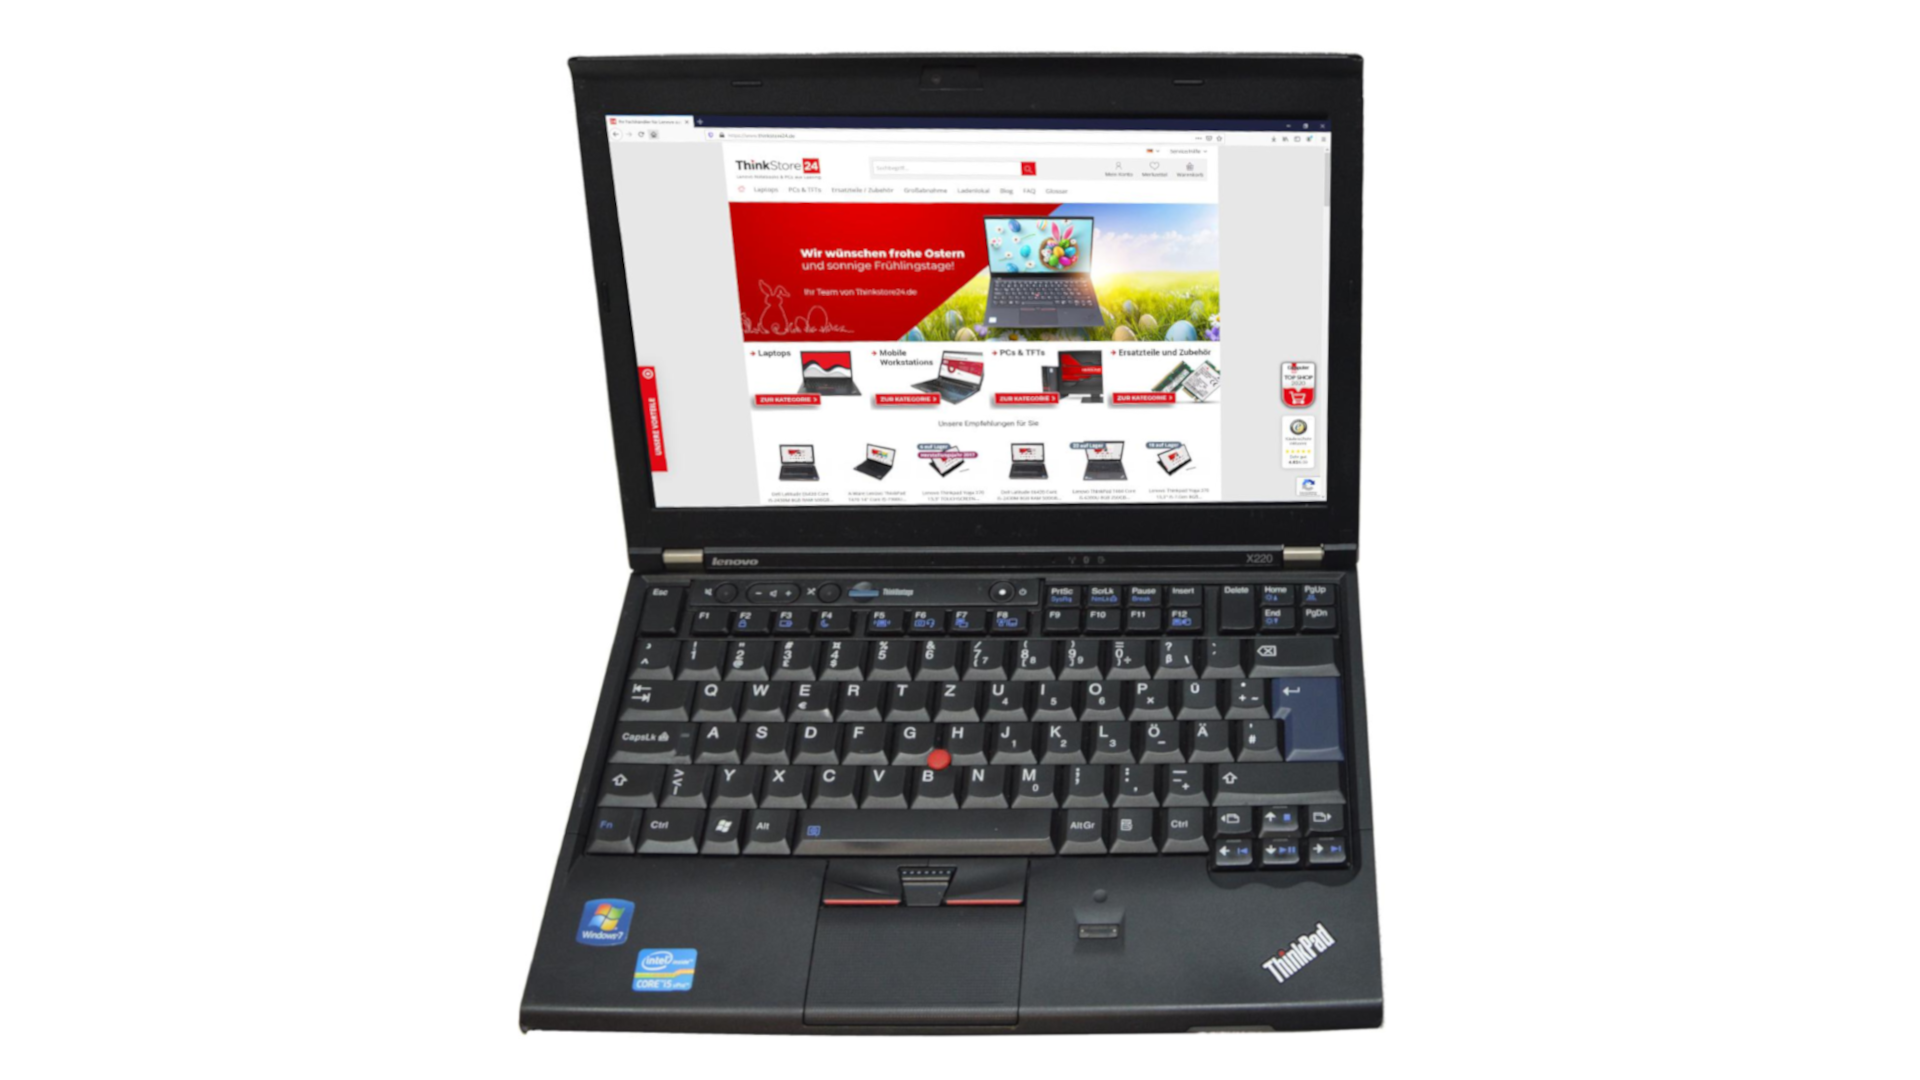 Lenovo ThinkPad X220 i5-2540M 2,50GHz 8GB RAM 320GB HDD 1366x768 Webcam no Win